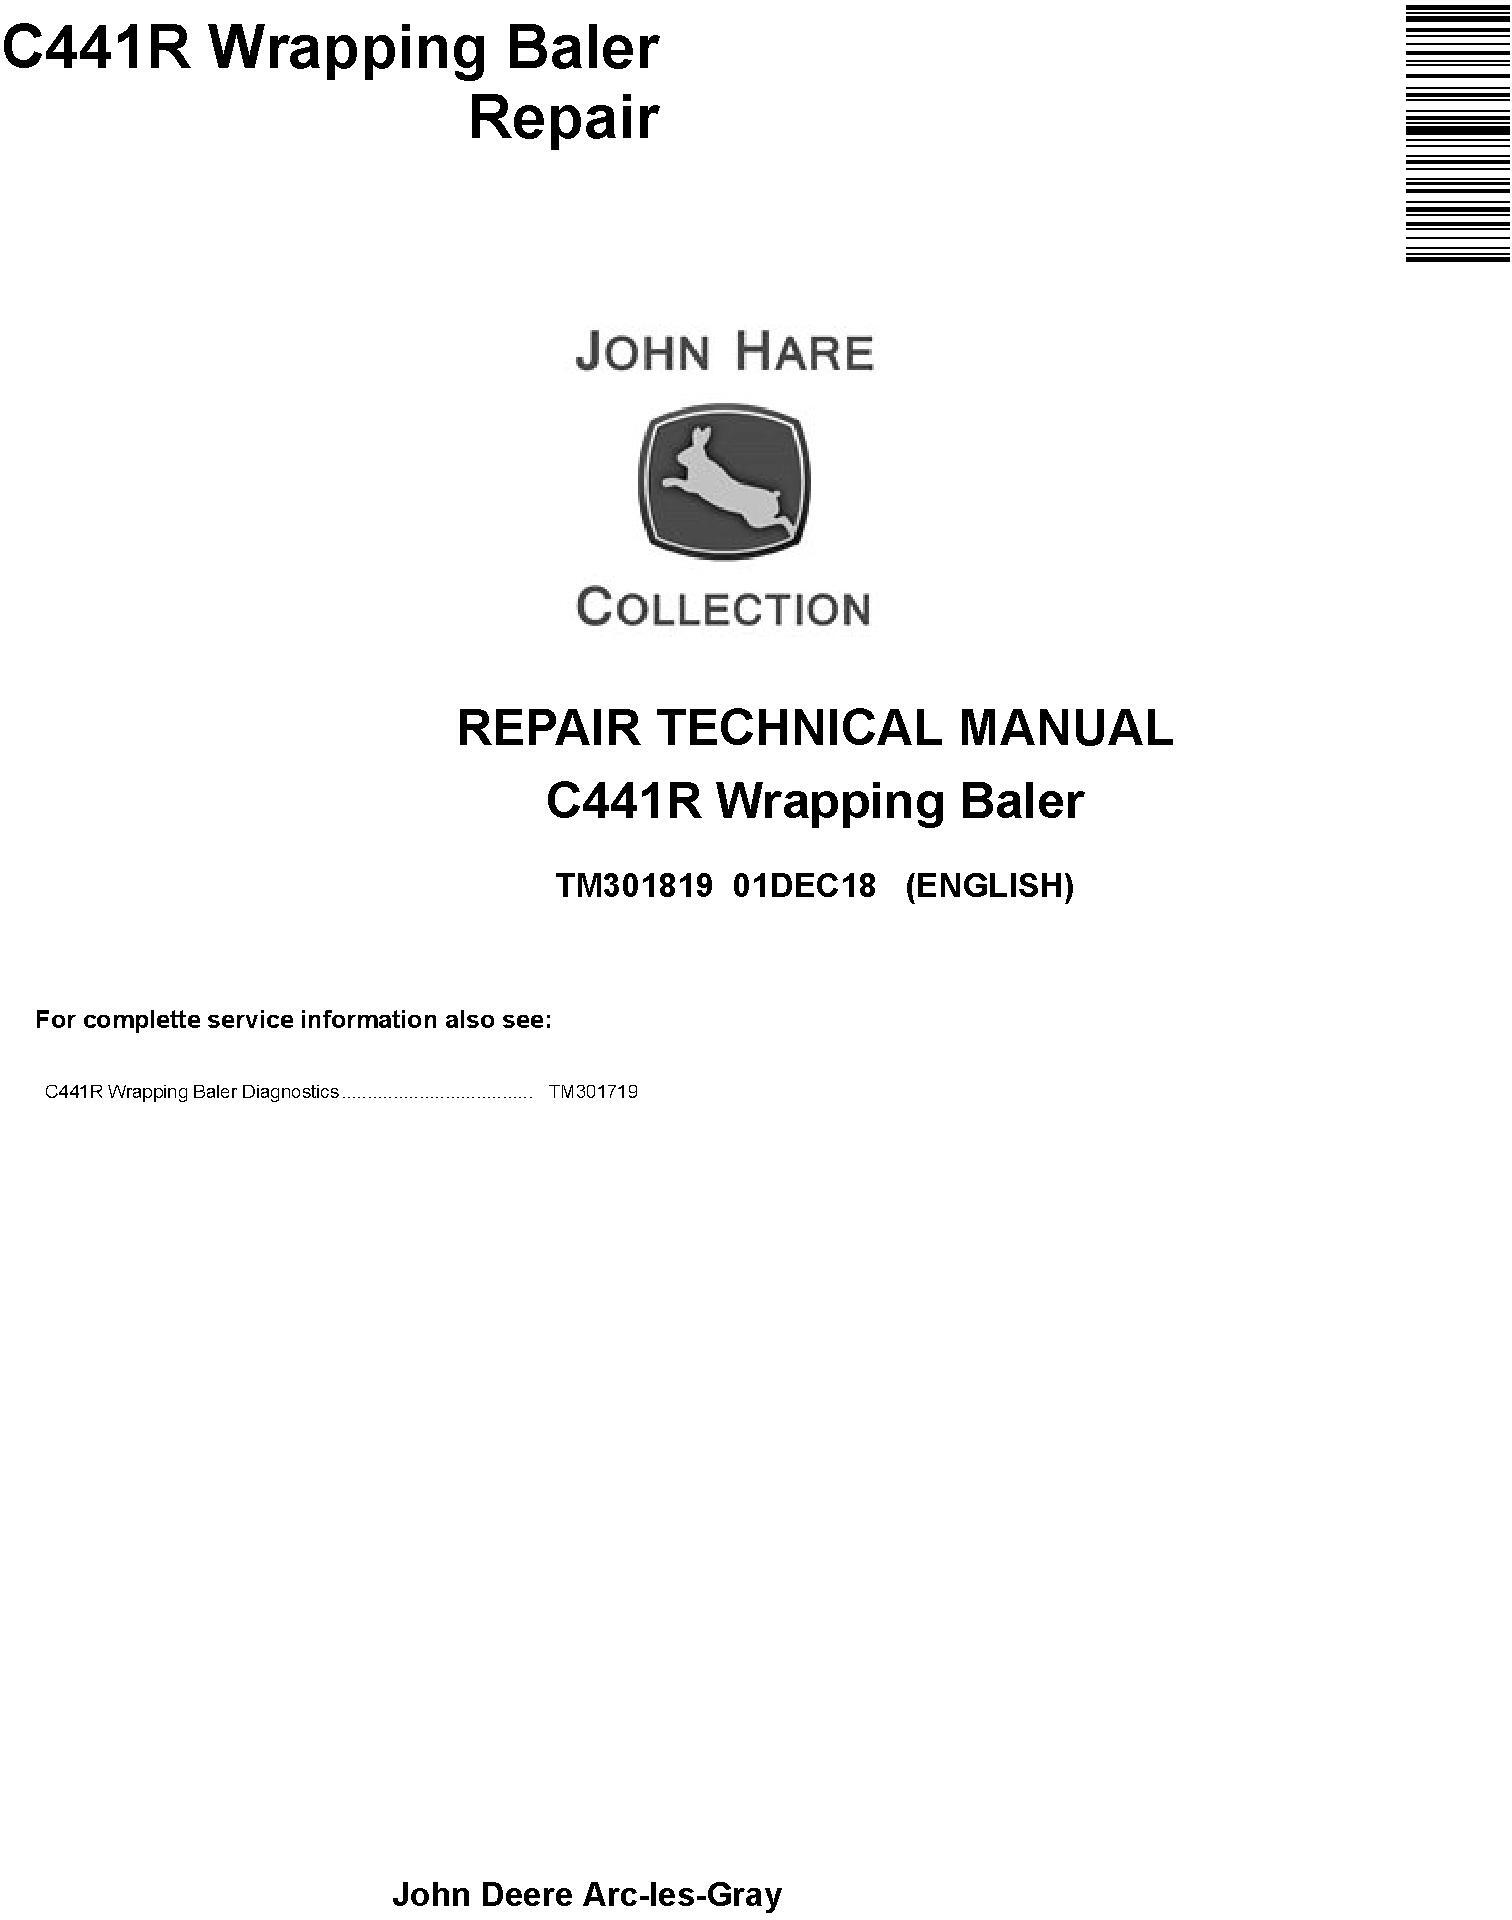 John Deere C441R Wrapping Baler Repair Technical Manual TM301819